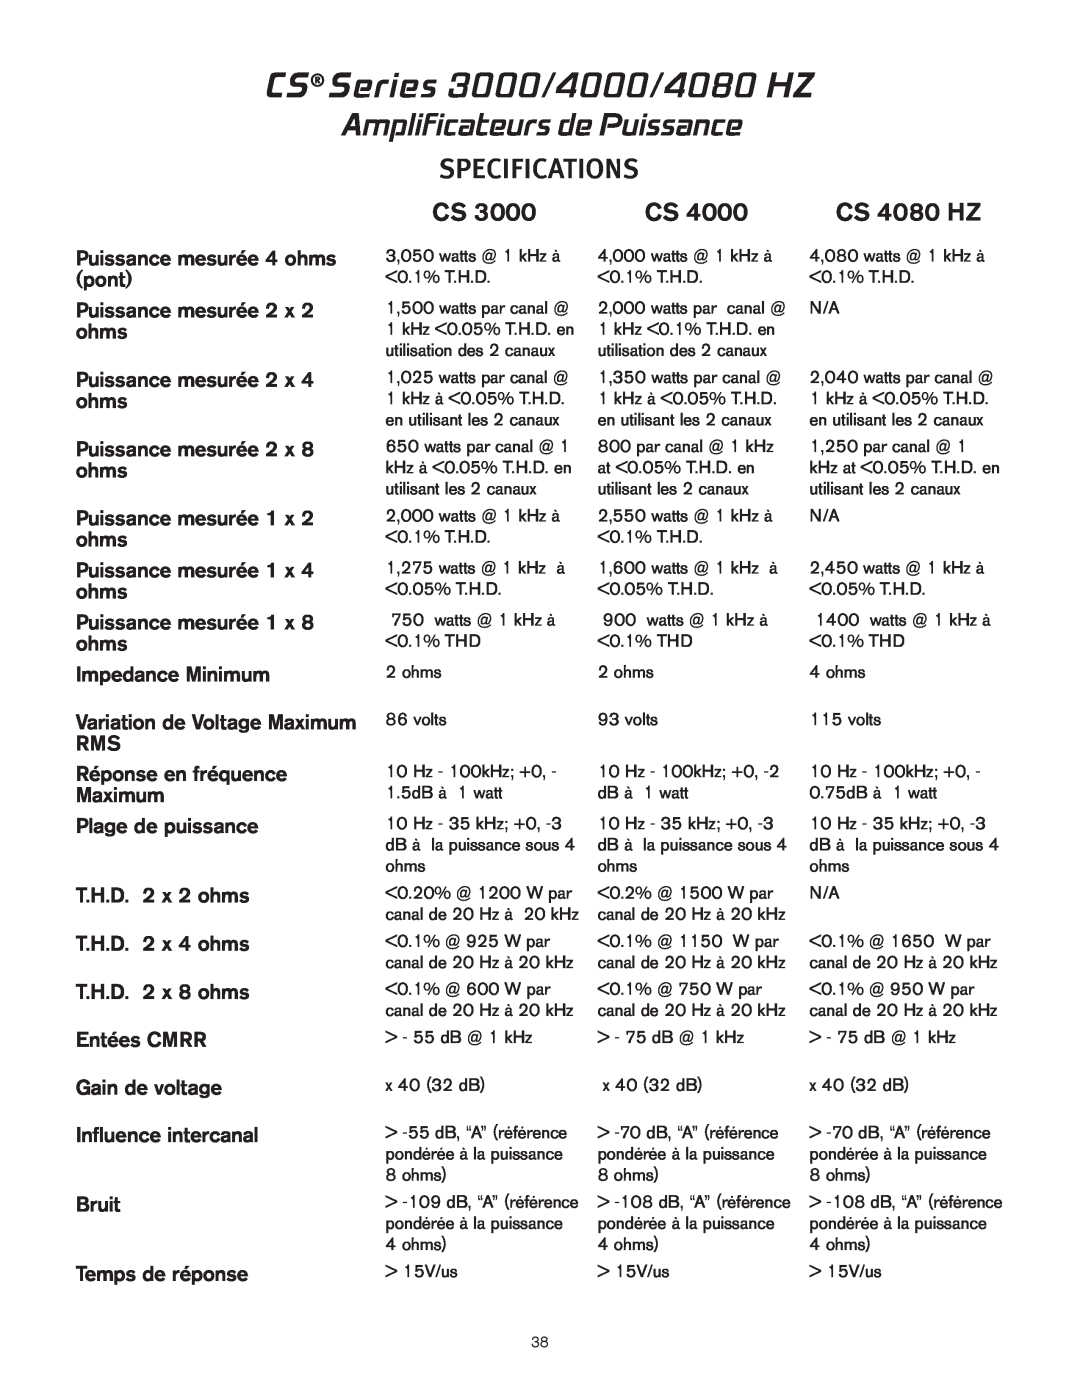 Peavey CS 3000 owner manual Amplificateurs de Puissance, CS Series 3000/4000/4080 HZ, Specifications, CS 4080 HZ 